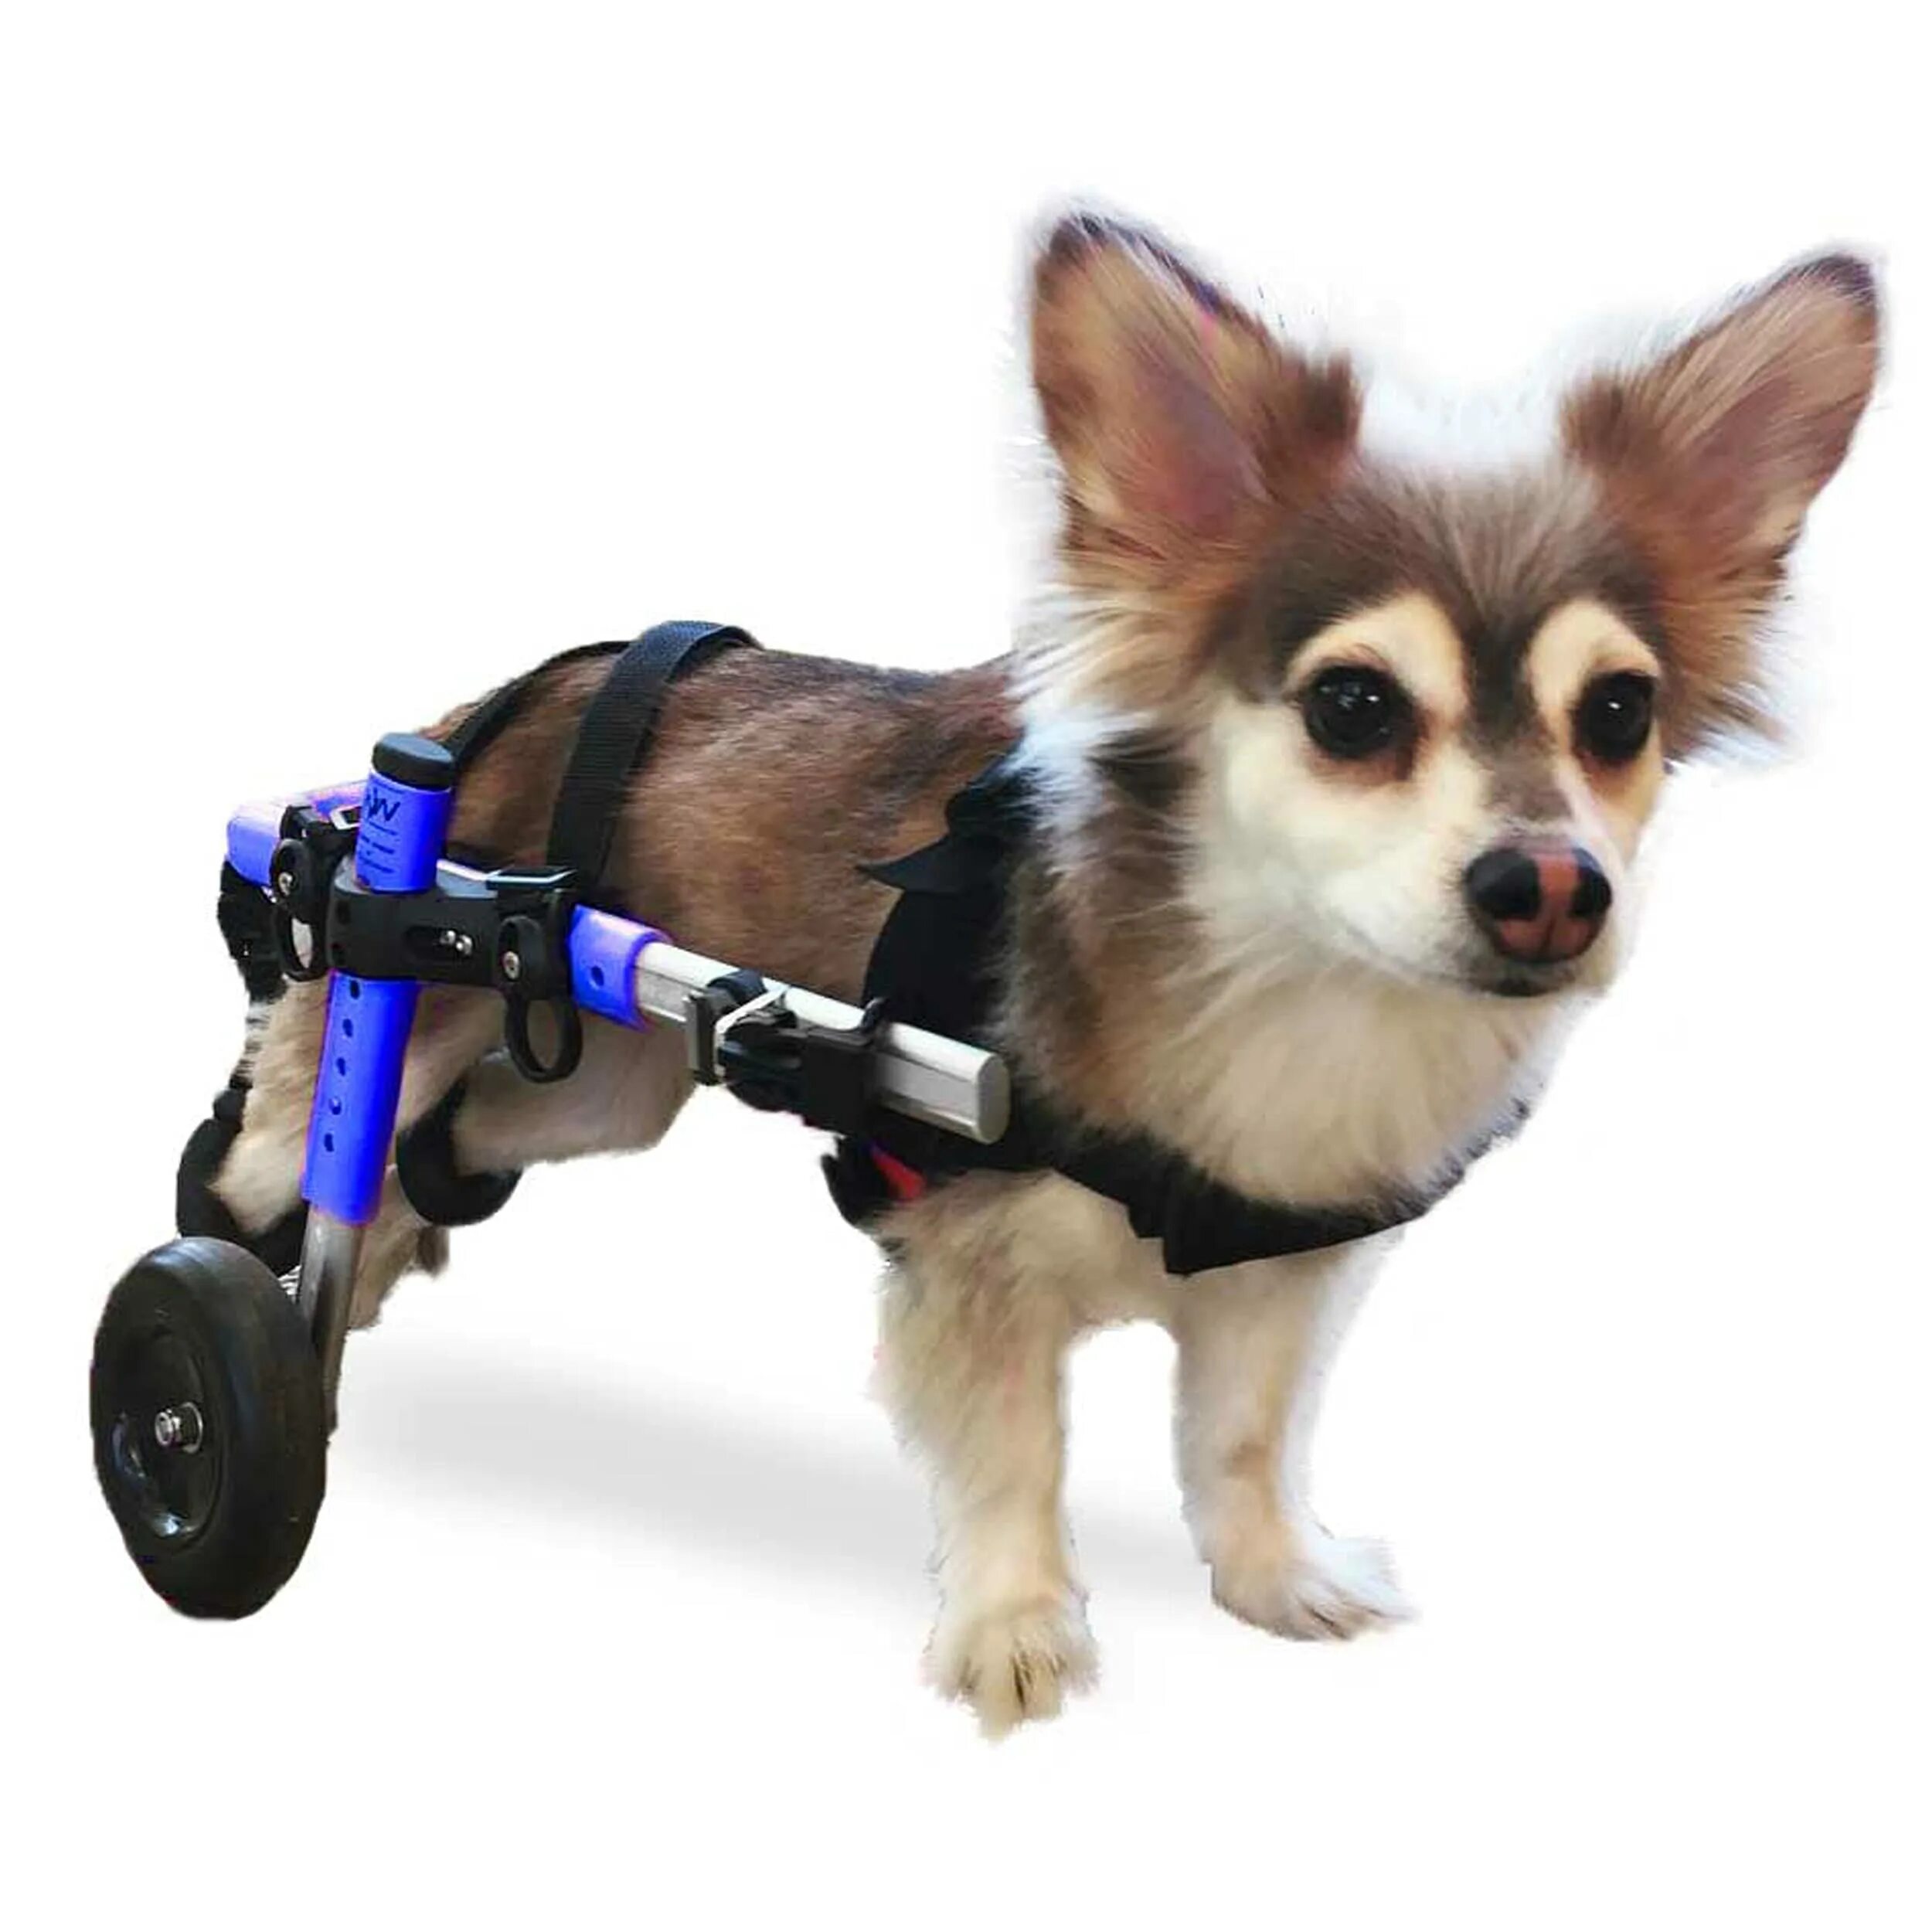 Инвалидная коляска для собак Walkin Wheels. Инвалидные коляски Dog wheelchairs. Коляска для собак Walkin' Wheels. Каталки для собак инвалидов.